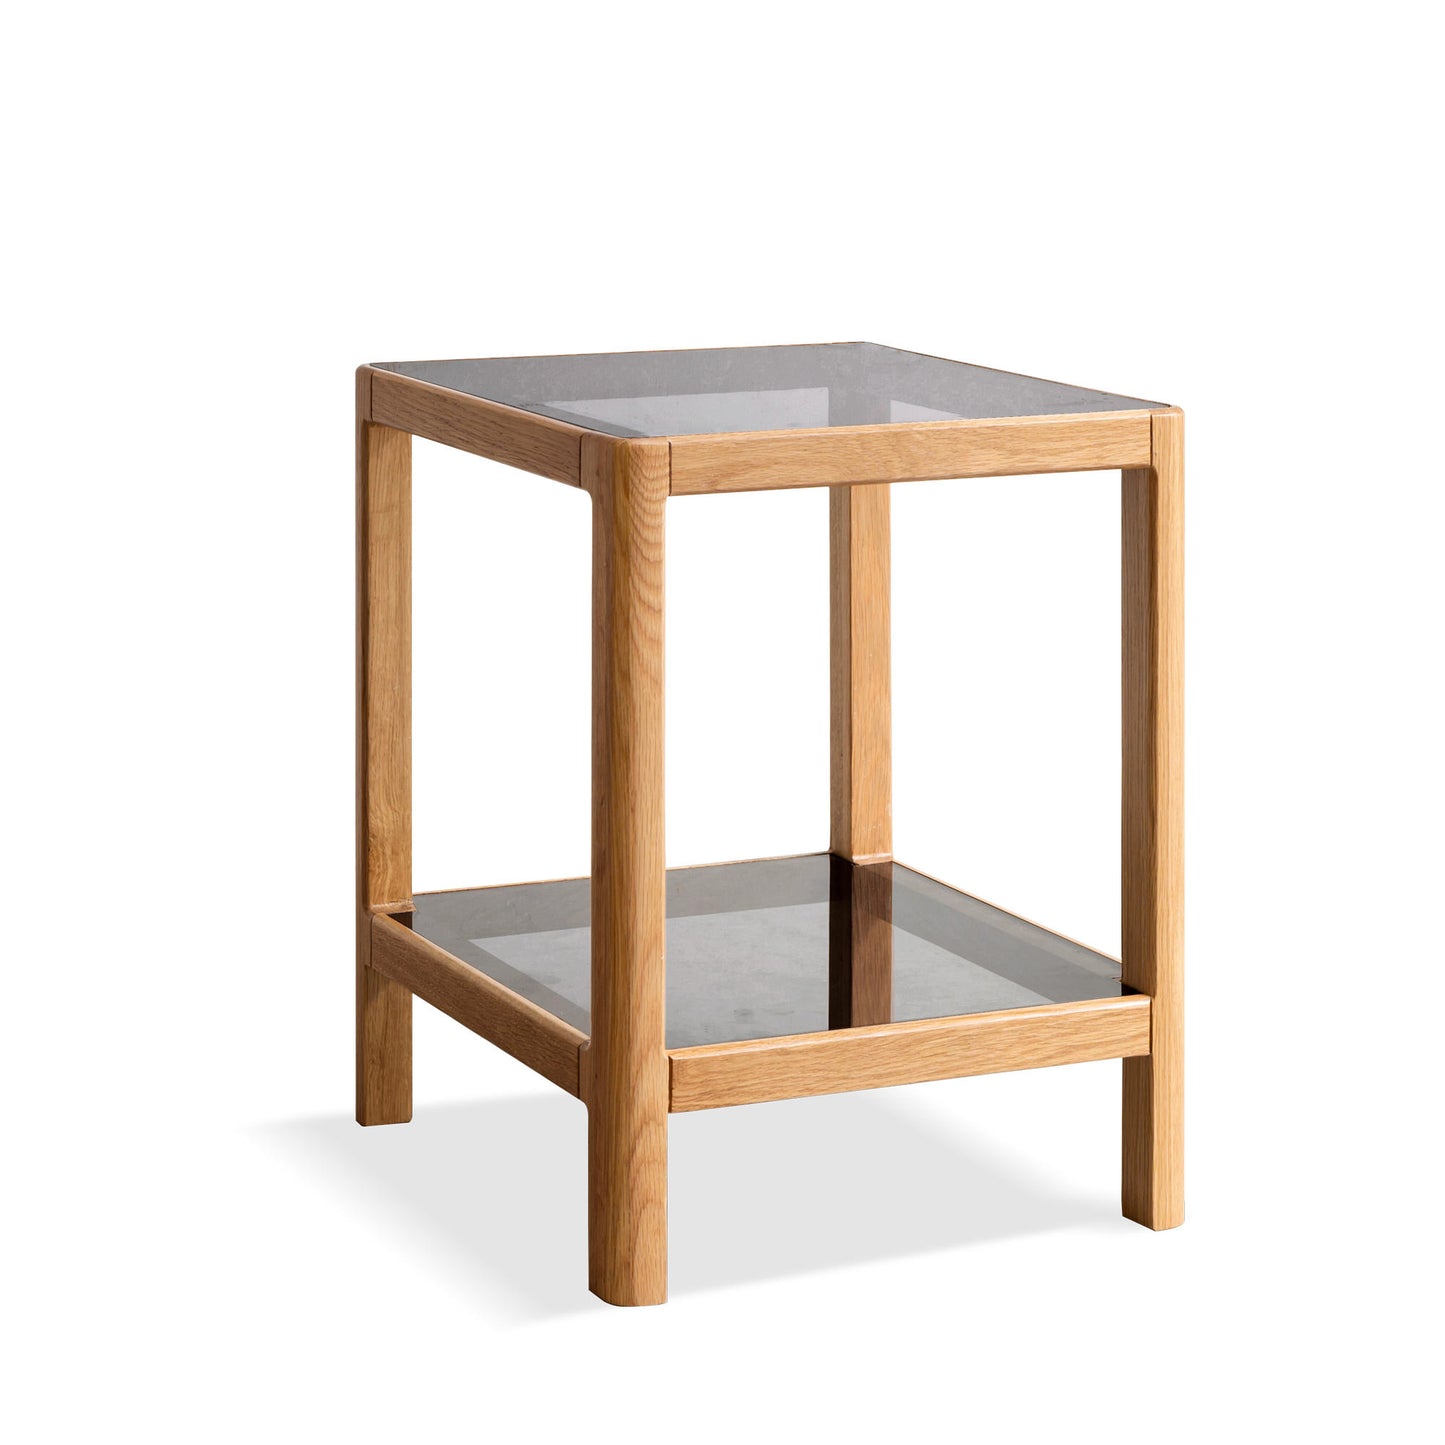 تسوق الان طاولة مربعه خشبي بسطح زجاج اونلاين | بيوت